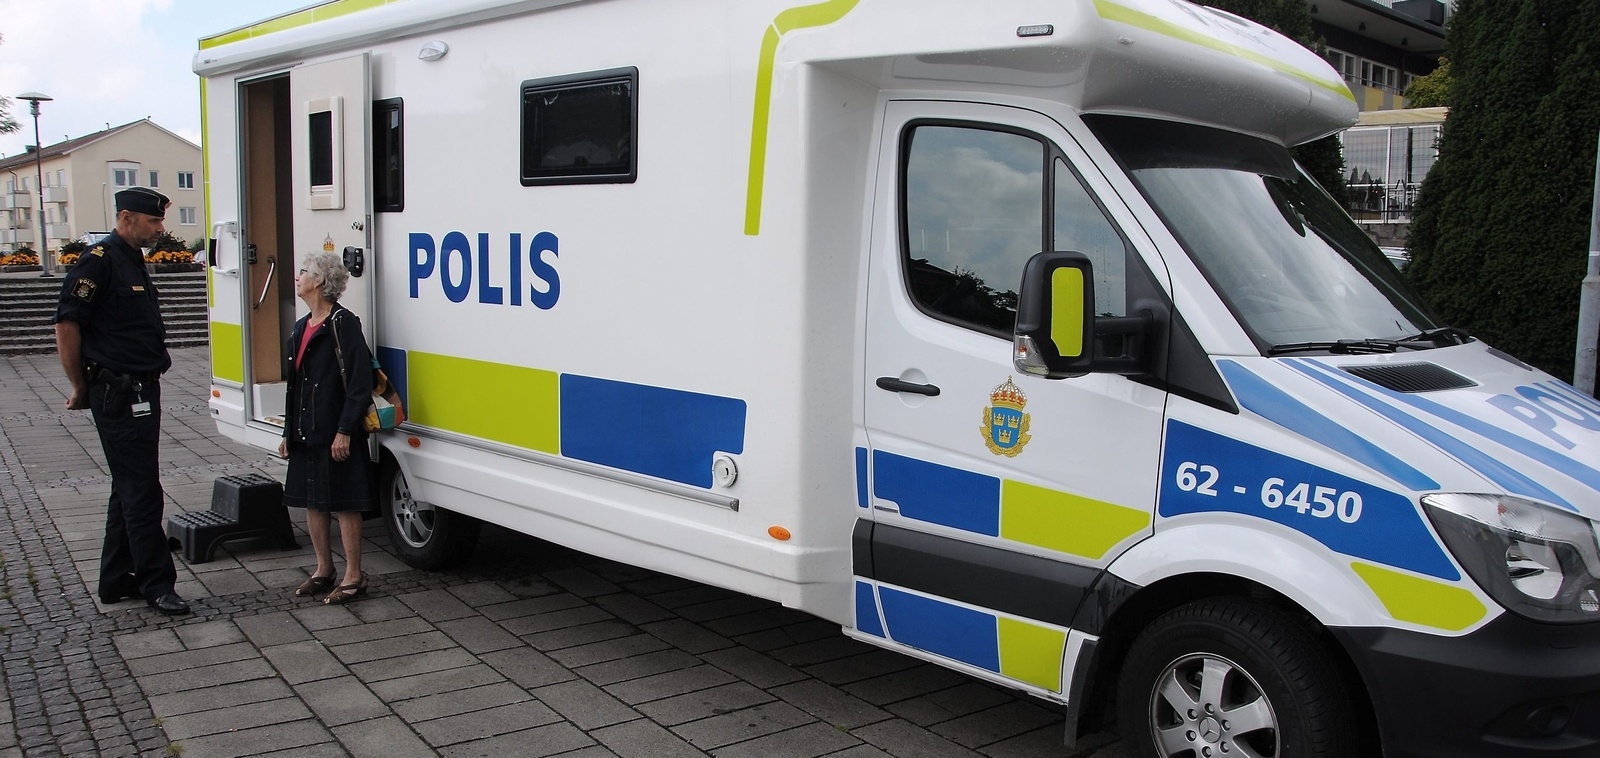 Mobila poliskontoret finns under förmiddagen på Ljungdala, och efter lunch på Stortorget. Foto: Arkiv